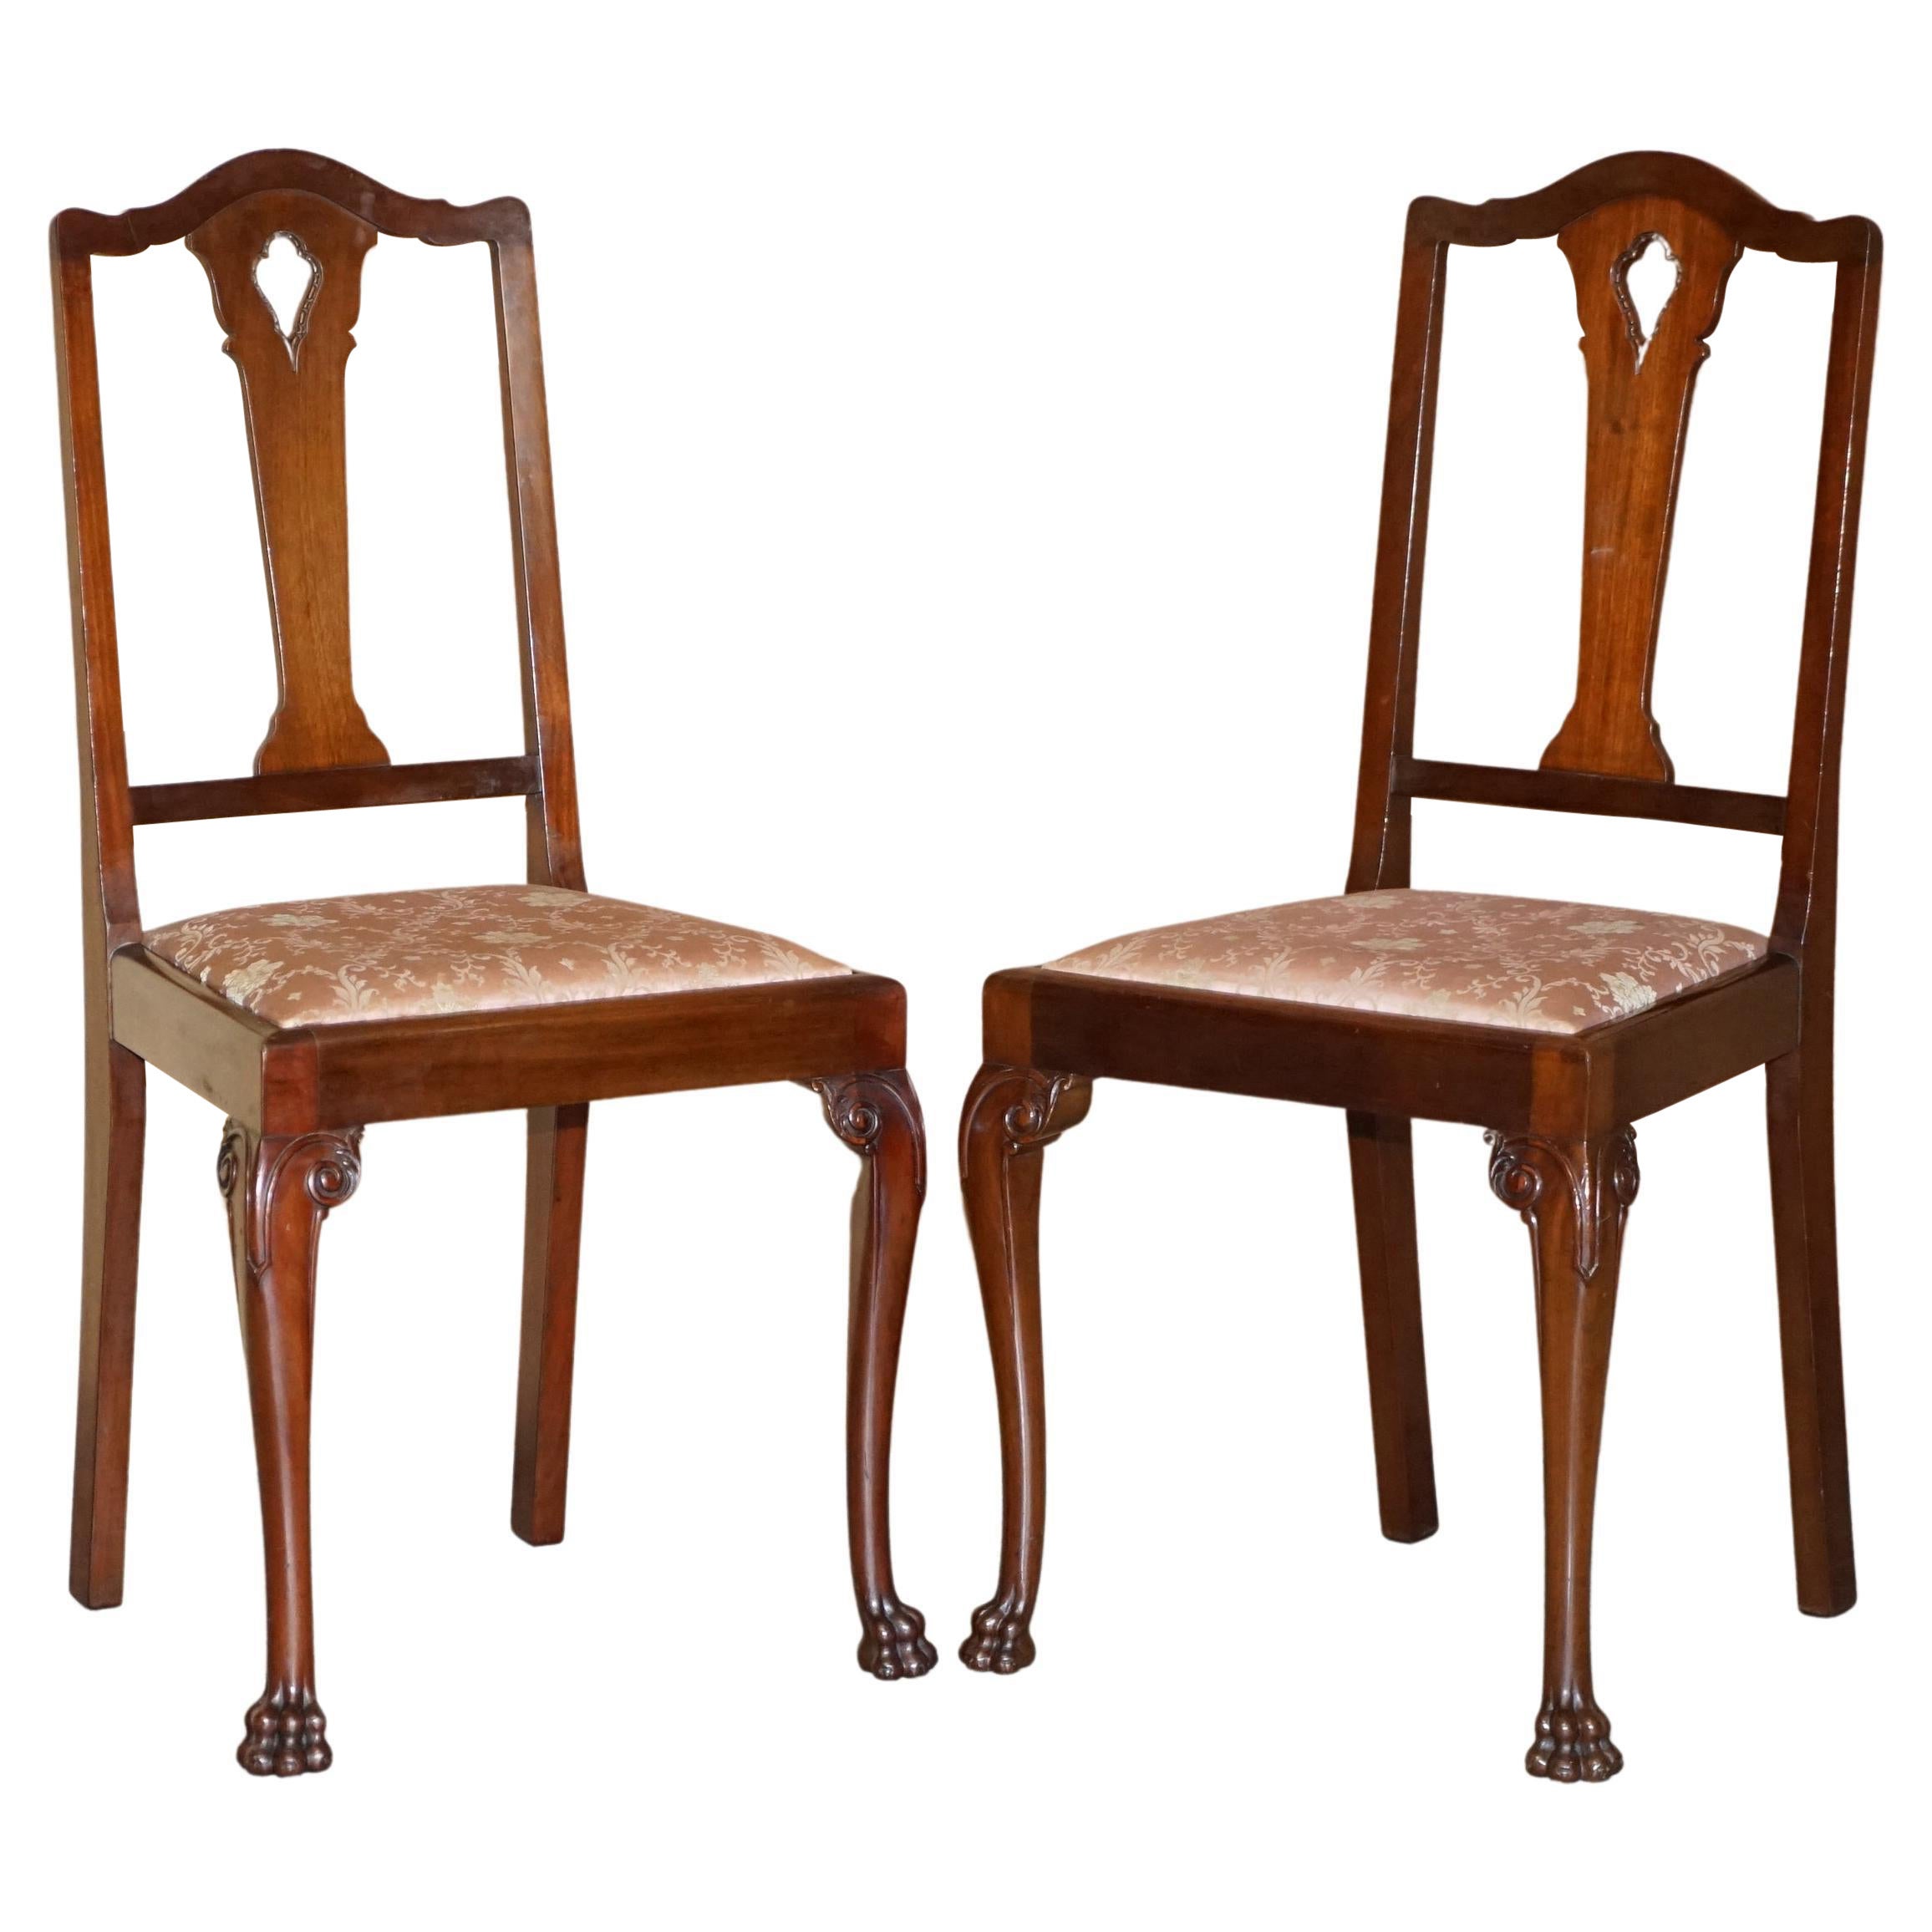 Paire d'anciennes chaises anglaises en bois dur du Honduras à pieds en pattes de lion sculptés à la main